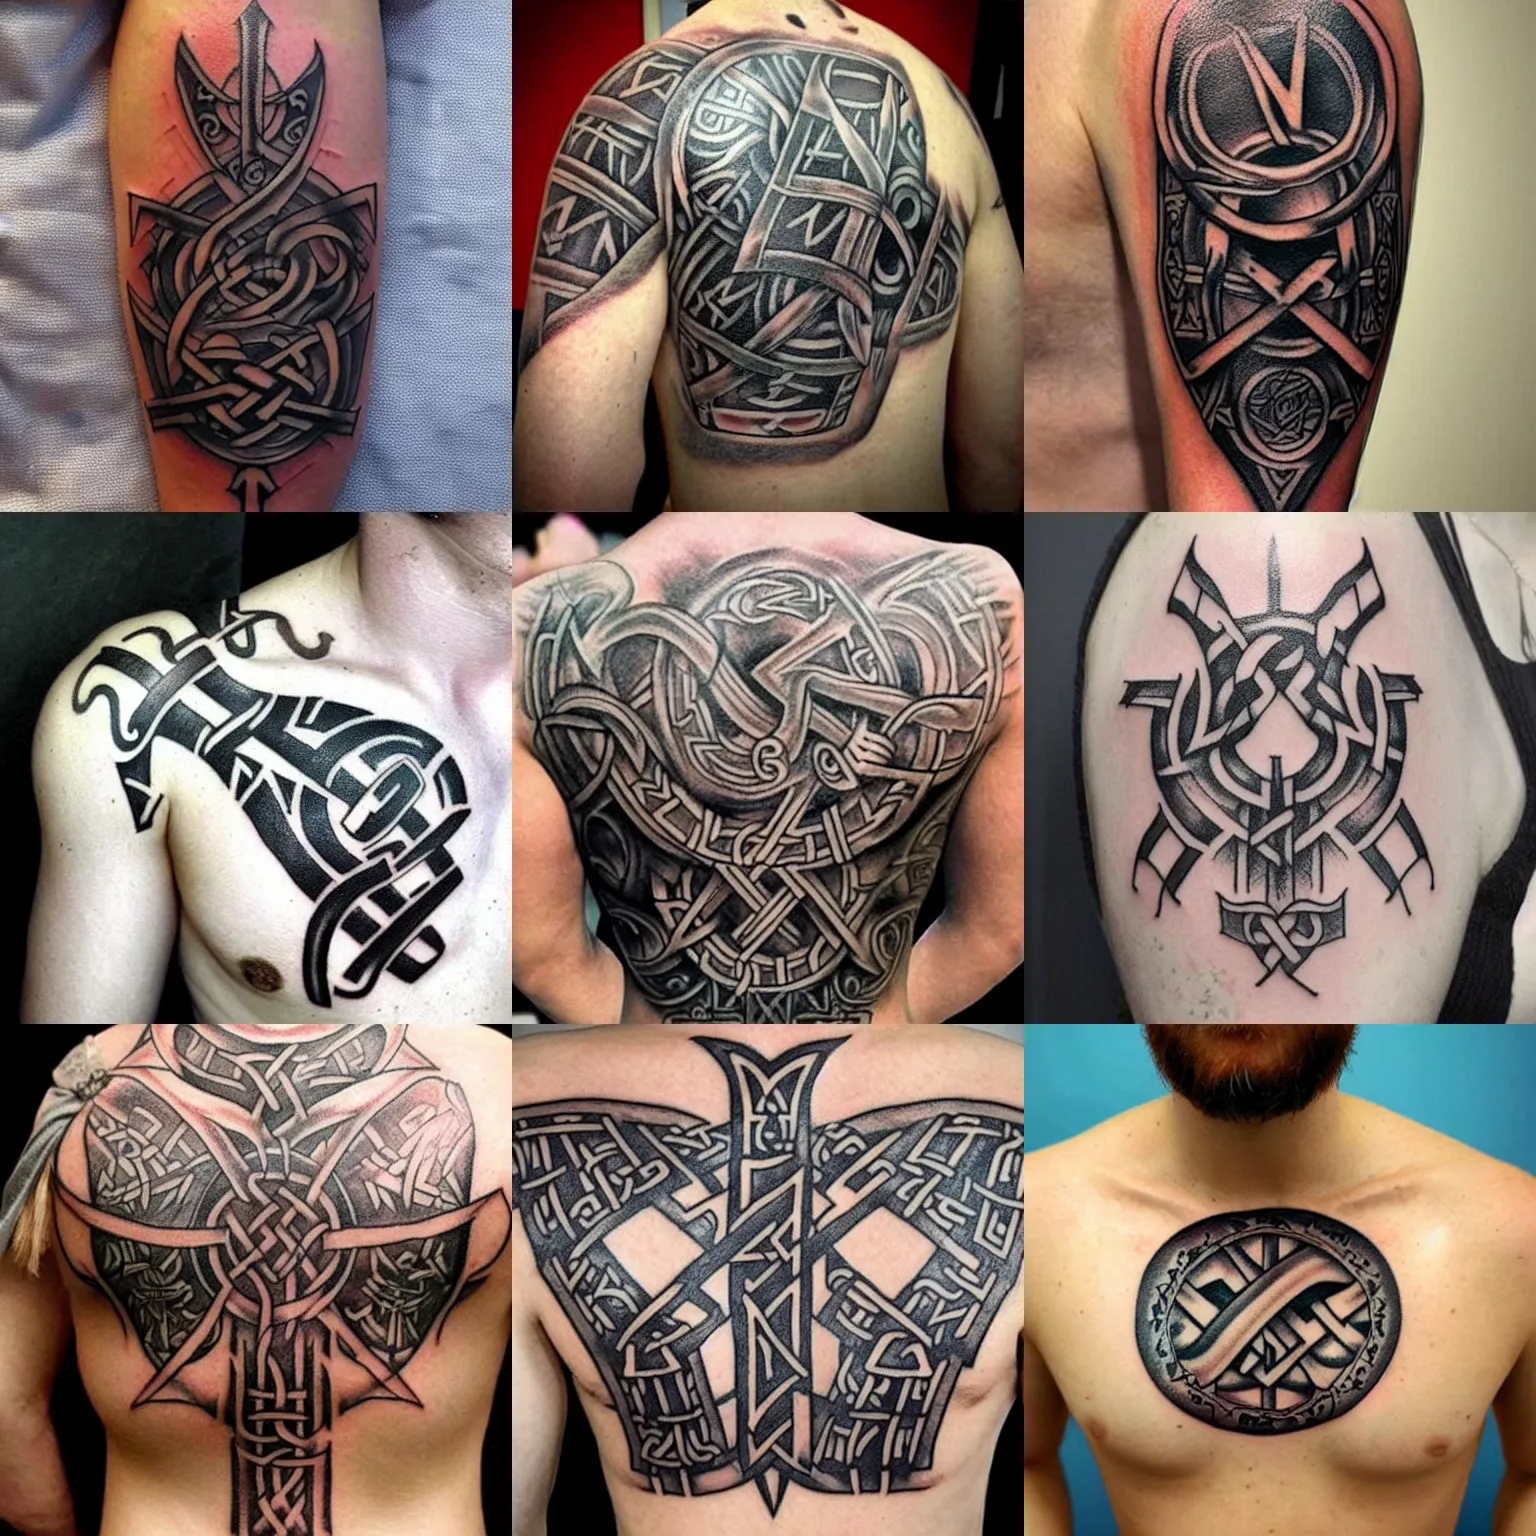 2 Viking Rune Tattoos & 1 Alchemy Tattoo - YouTube